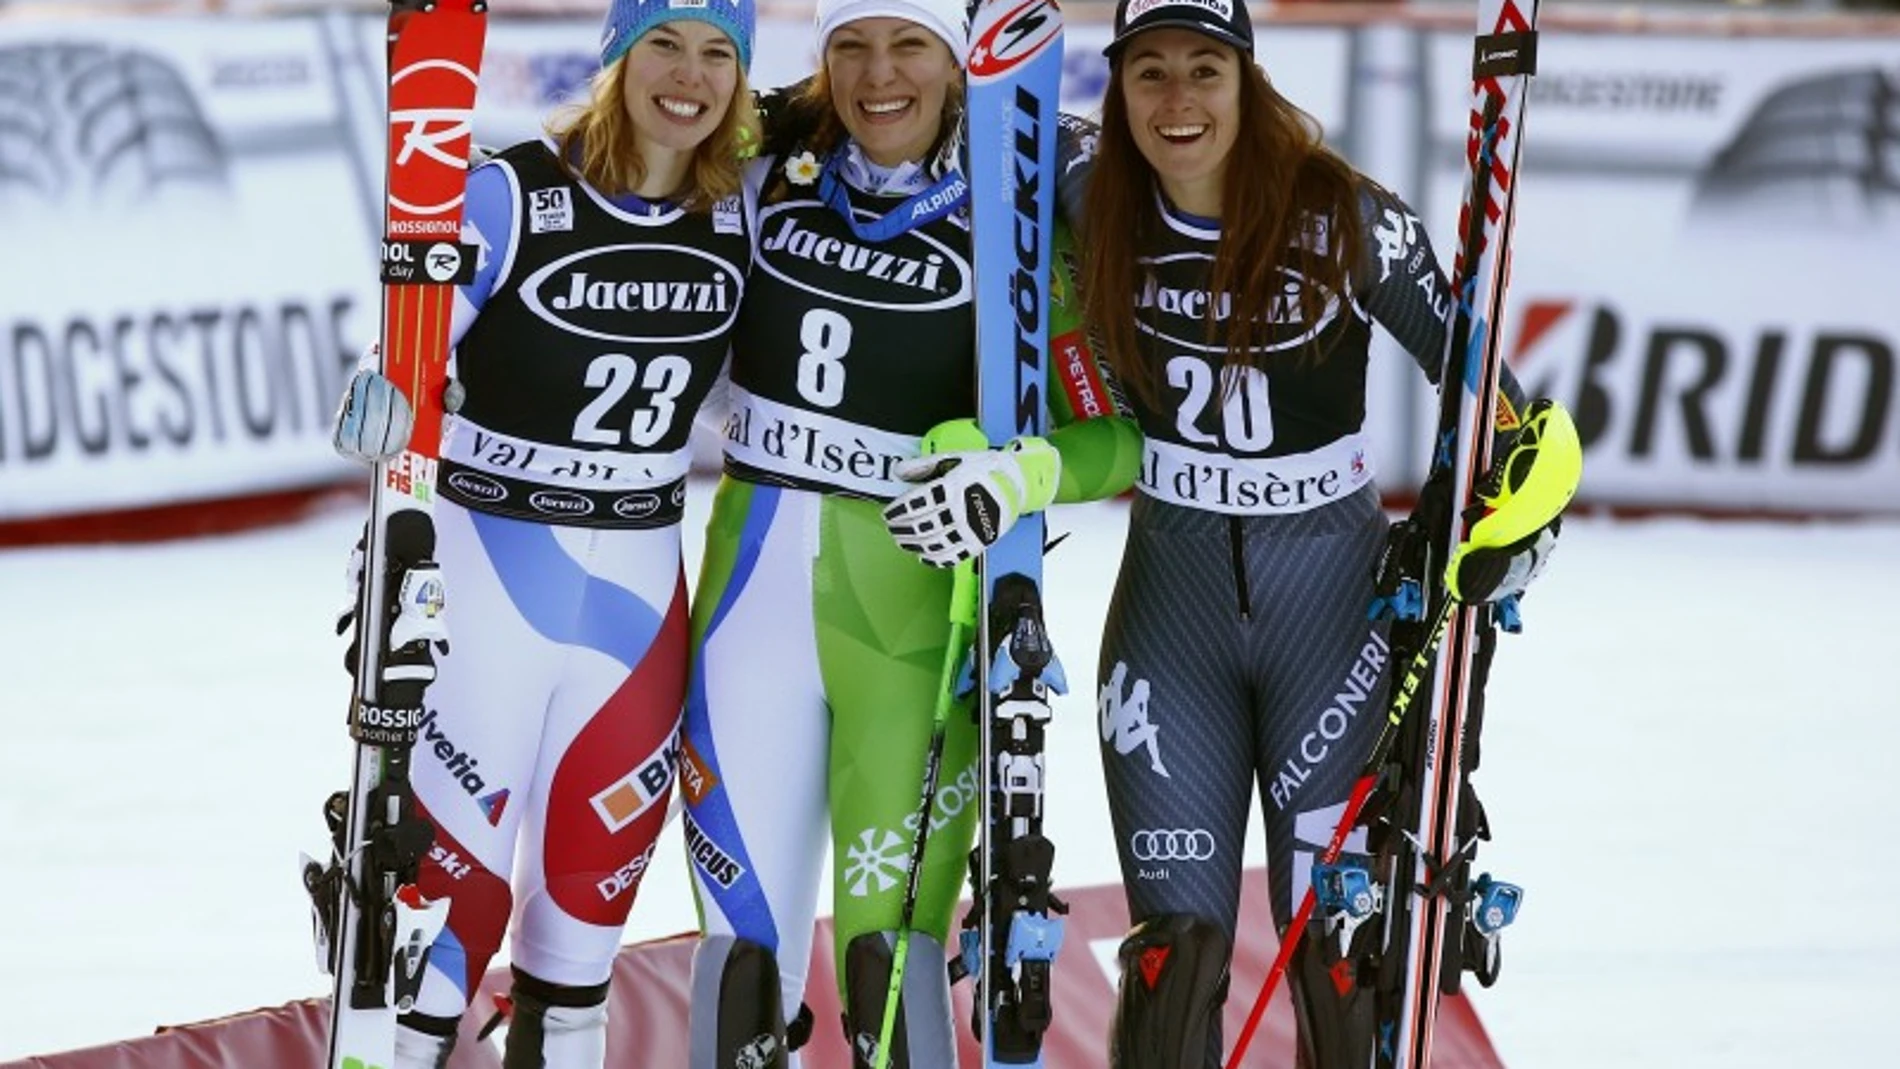 Segundo puesto para Michelle GisinIlka (izda.), la campeona Stuhec (centro) y Sofia Goggia (dcha.)